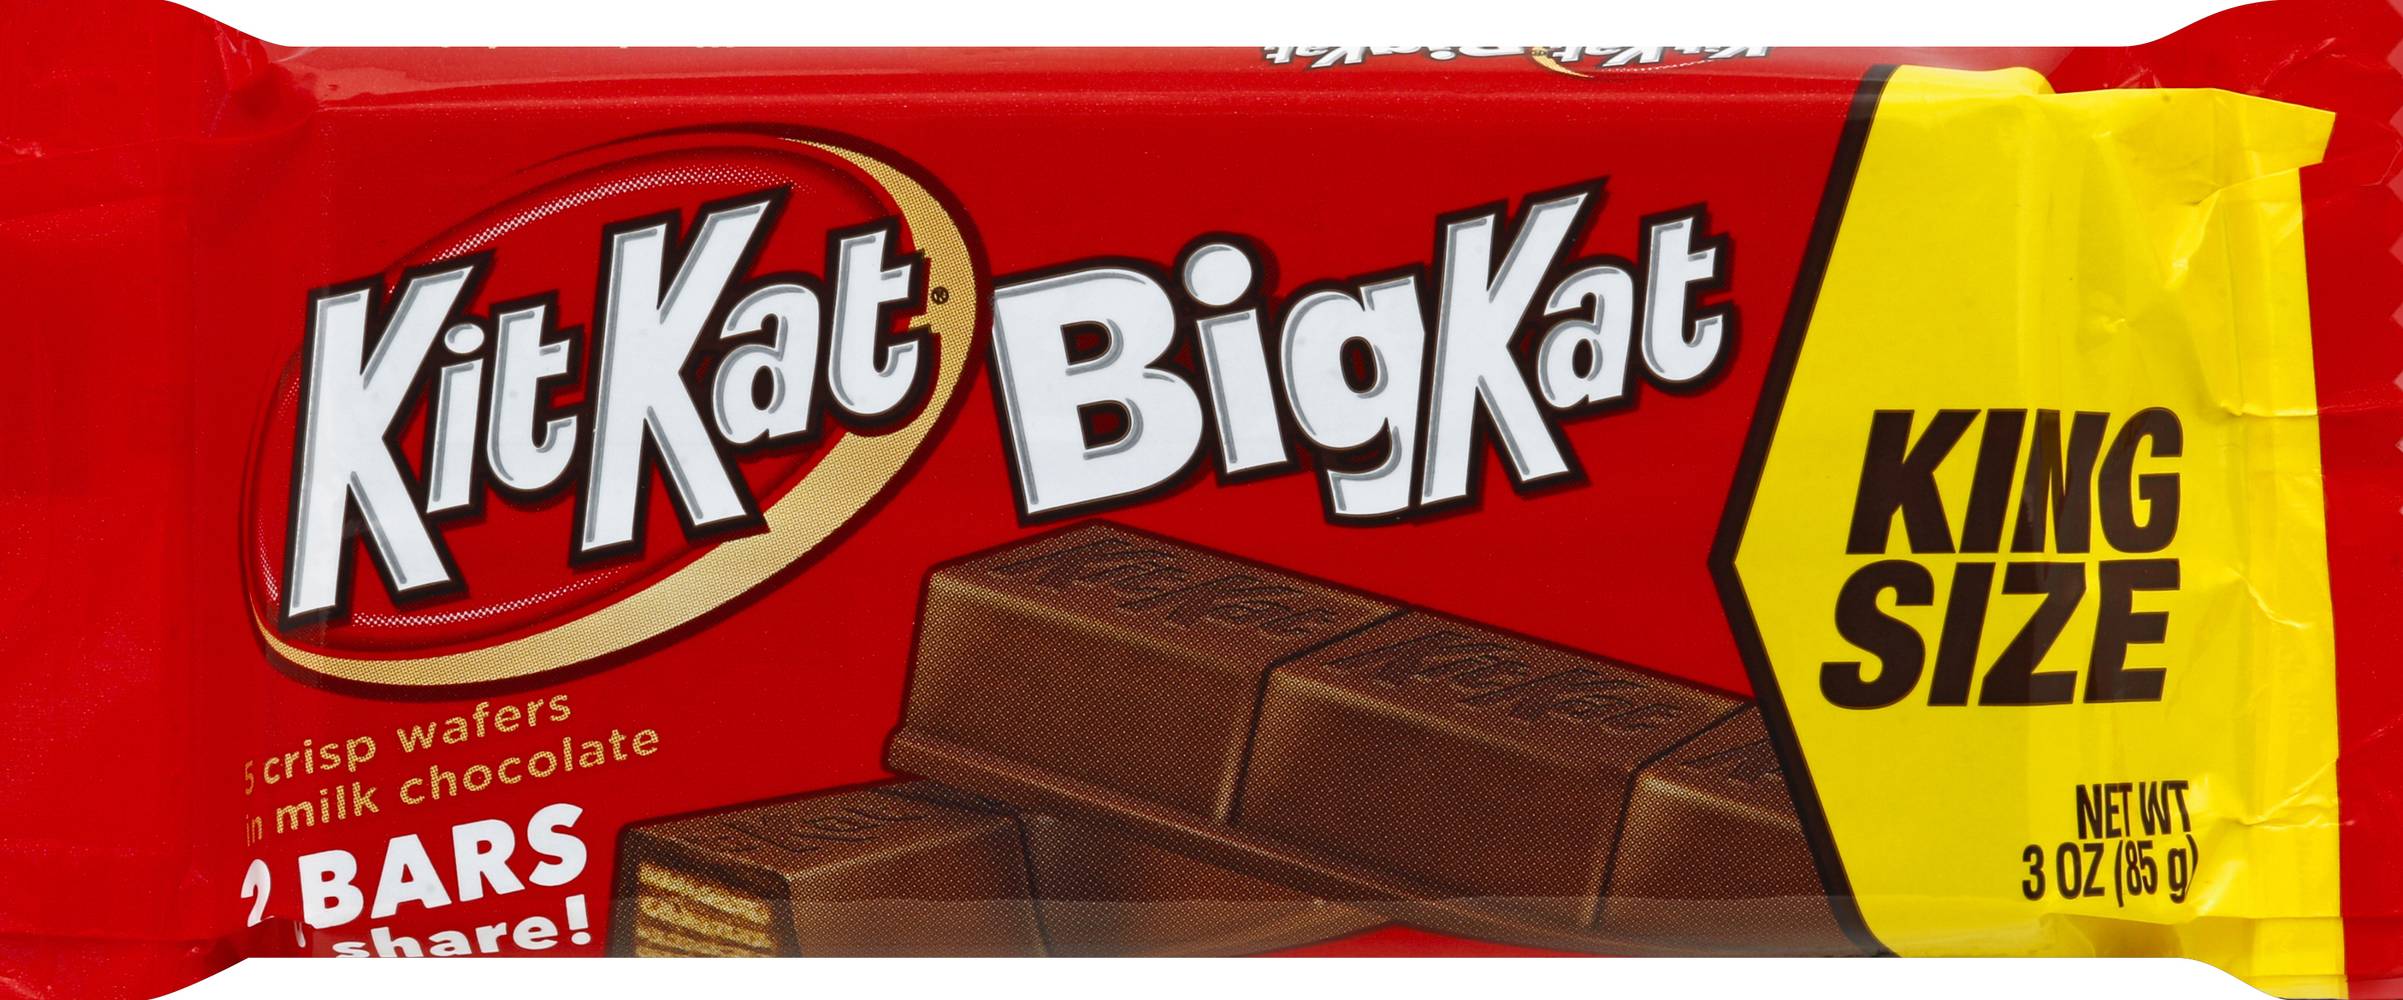 Kit Kat King Size Chocolate ( 2 ct )